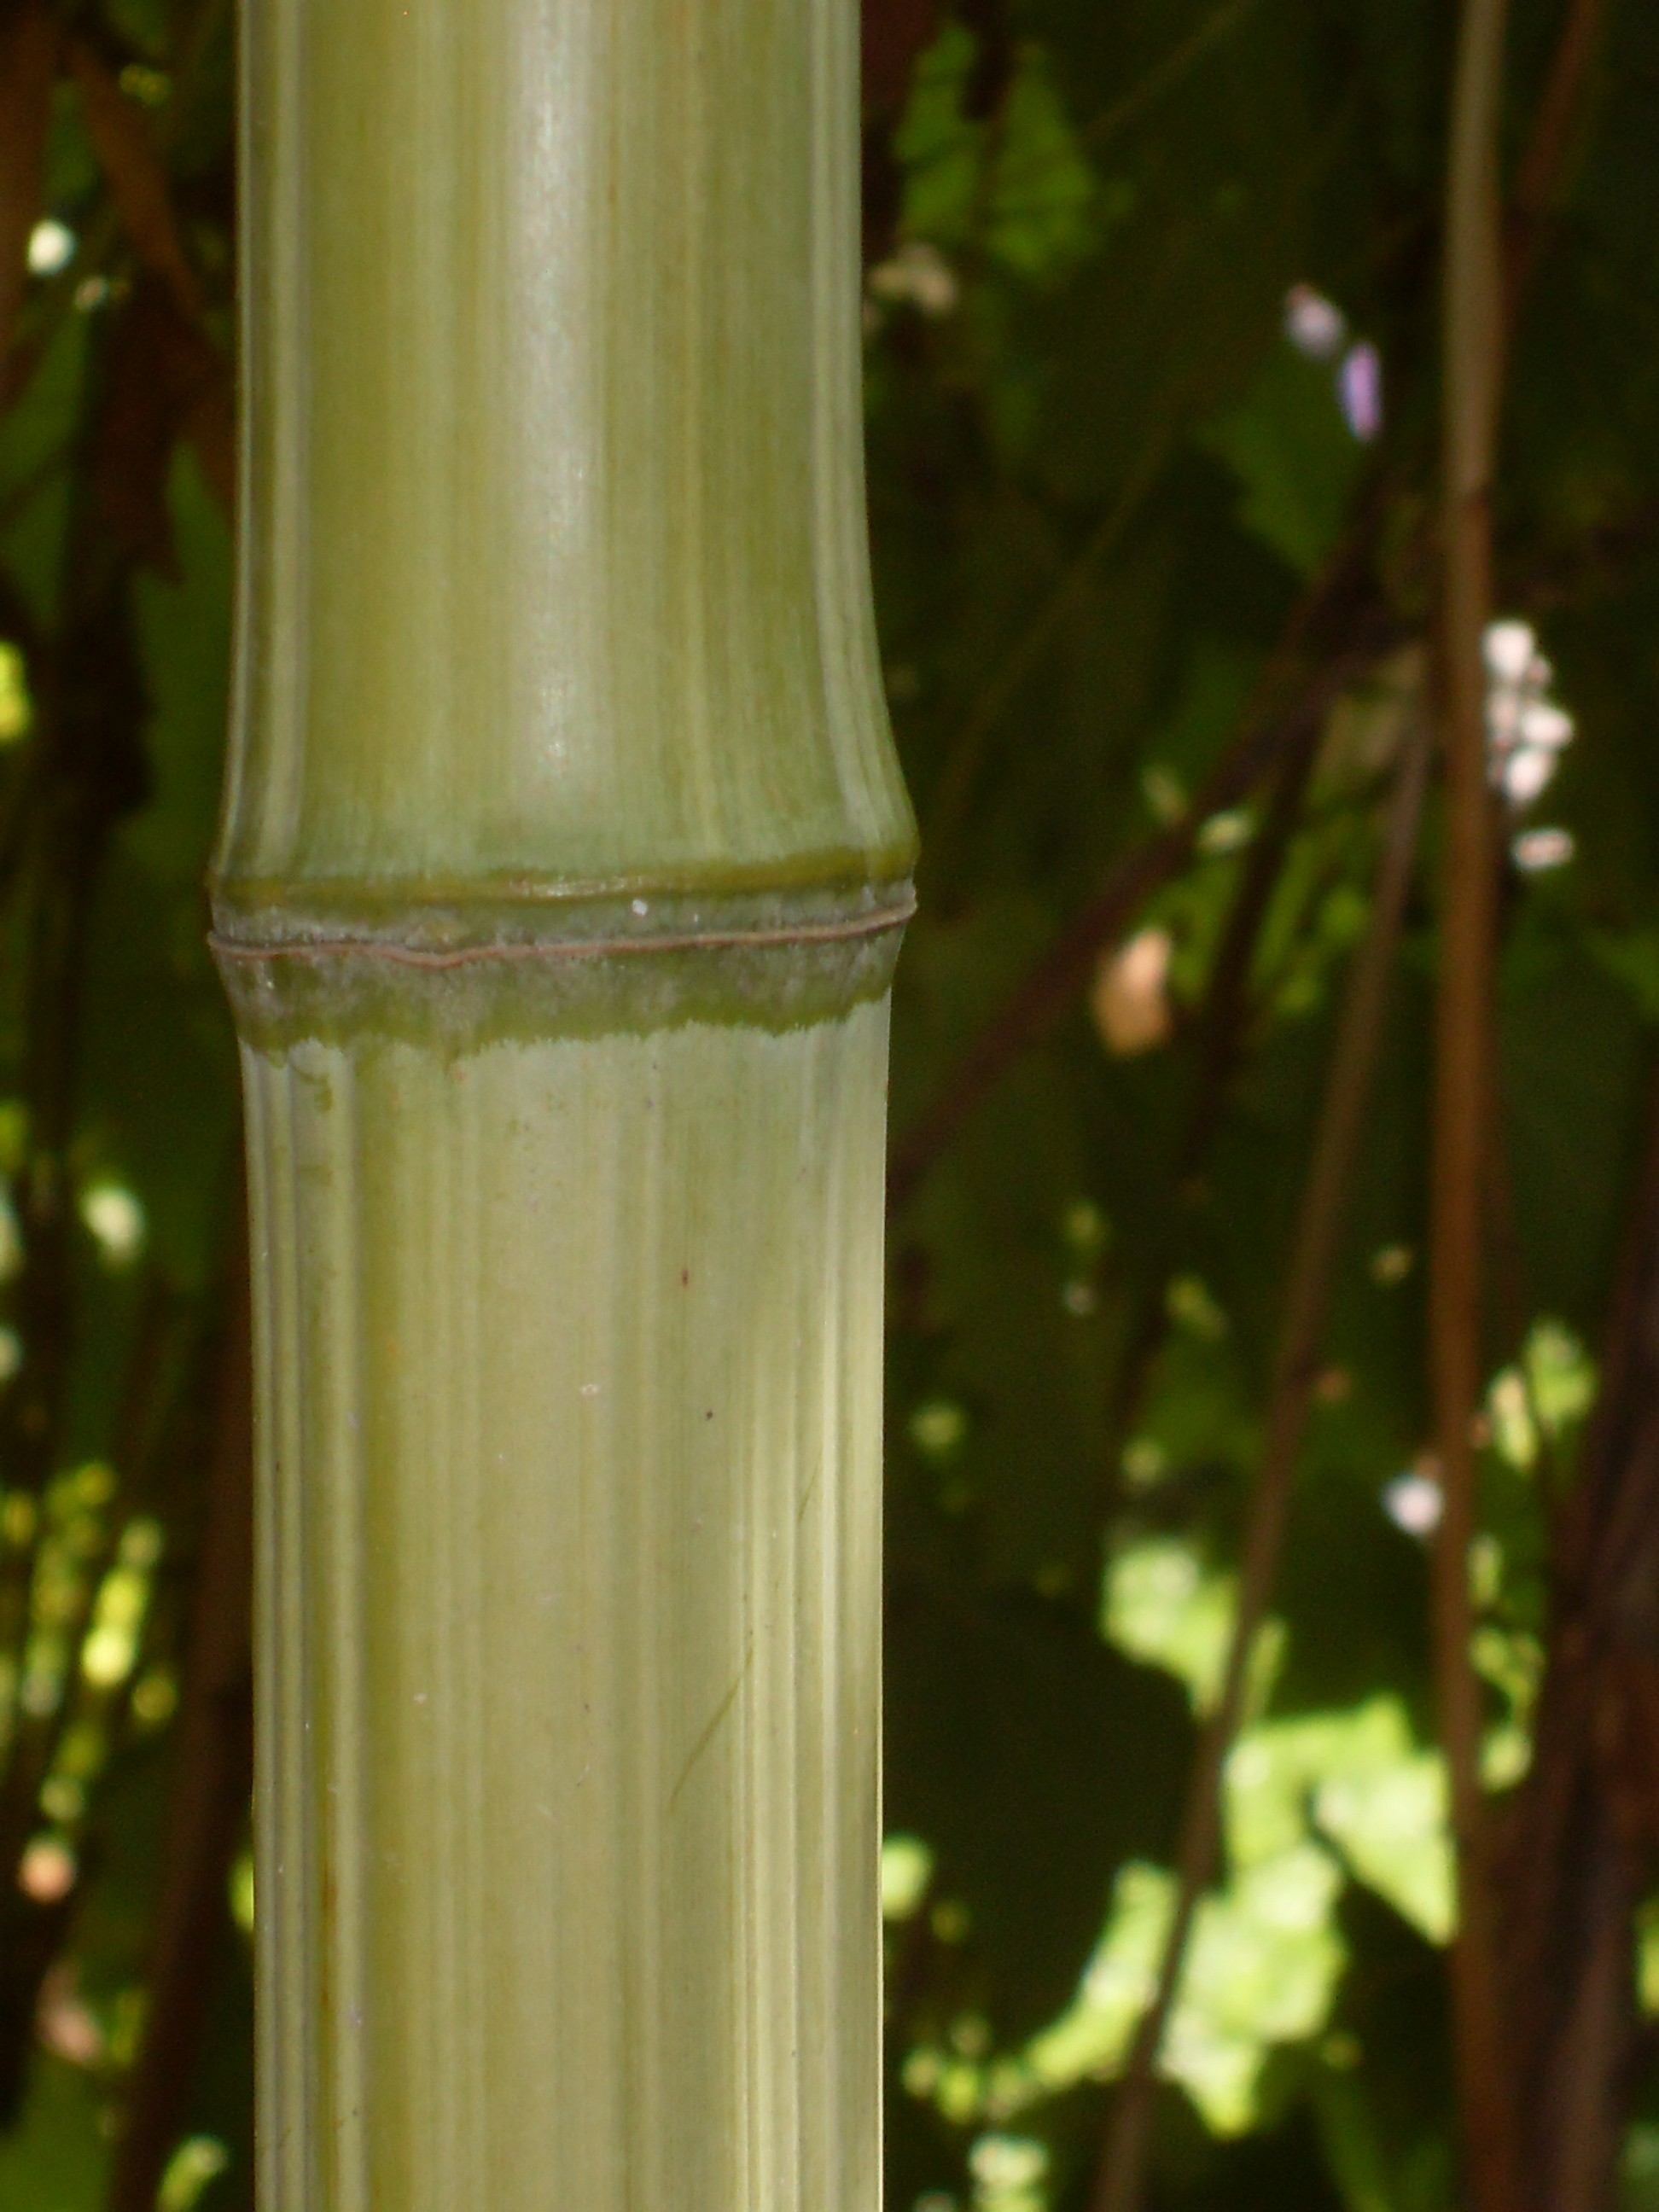 Phyllostachys bambusoïdes 'Marliacea'